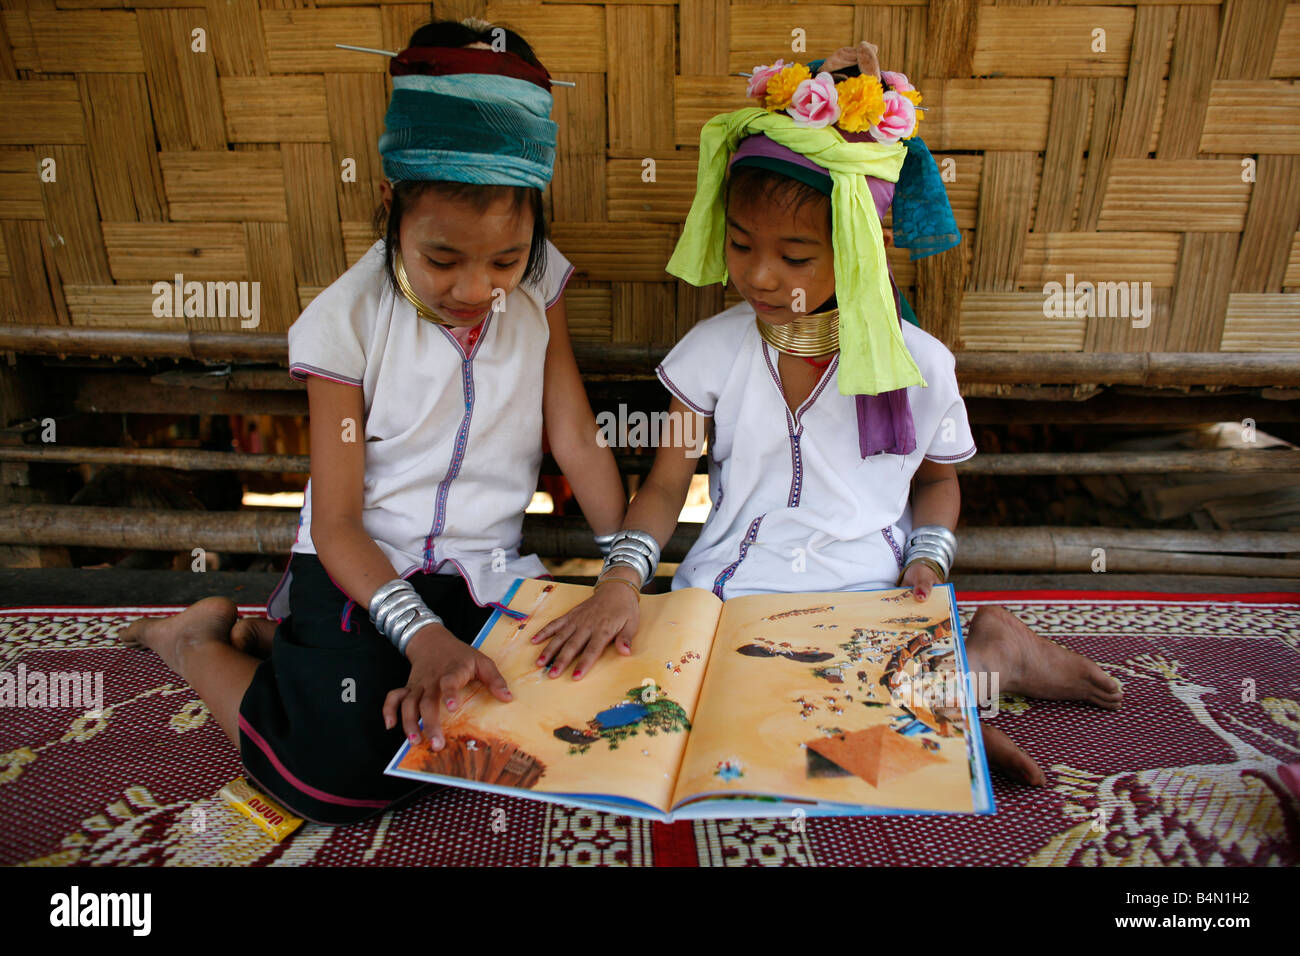 Zwei junge Longneck Mädchen betrachten ein Buch zusammen etwa 300 birmanischen Flüchtlinge in Thailand Mitglieder der indigenen Gruppe bekannt sind als die Longnecks, die größte der drei Dörfer wo live Longnecks Nai Soi genannt befindet sich in der Nähe von Mae Hong Son Stadt longnecks, tragen Metallringe auf den Hals, die das Schlüsselbein nach unten drücken und verlängern dem Hals, sie sind, ein Tourist Anziehung Touristen besuchen Nai Soi zu fotografieren die Longnecks und ihr Kunsthandwerk kaufen Die Dörfer sind als menschliche Zoos von Menschenrechtsorganisationen kritisiert. Stockfoto